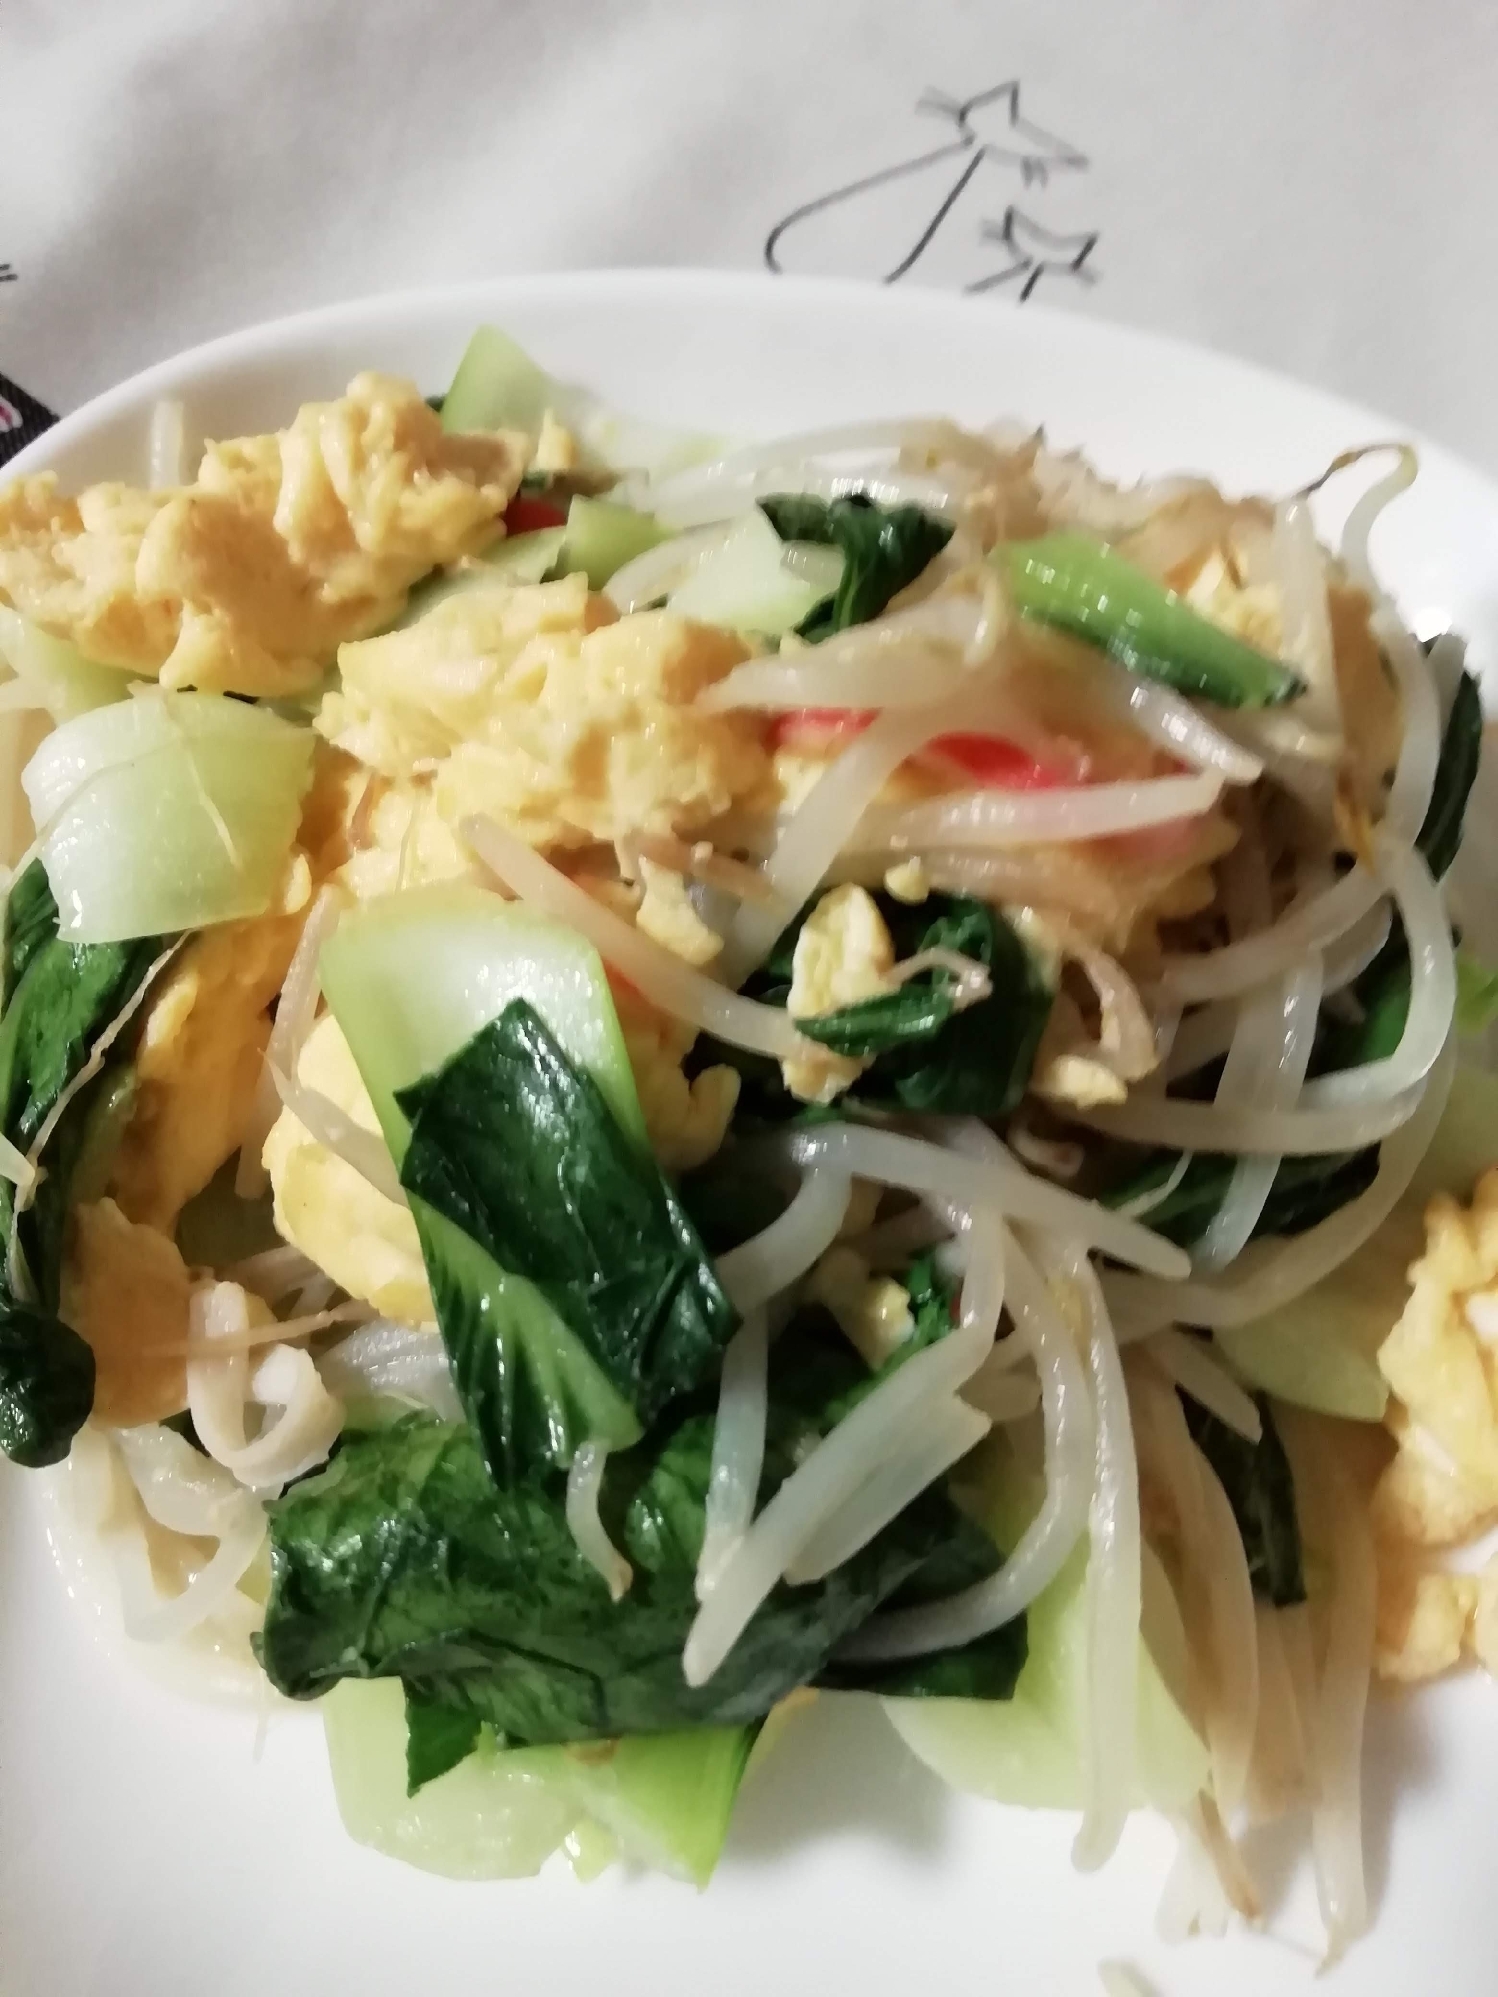 青梗菜と卵の炒め物